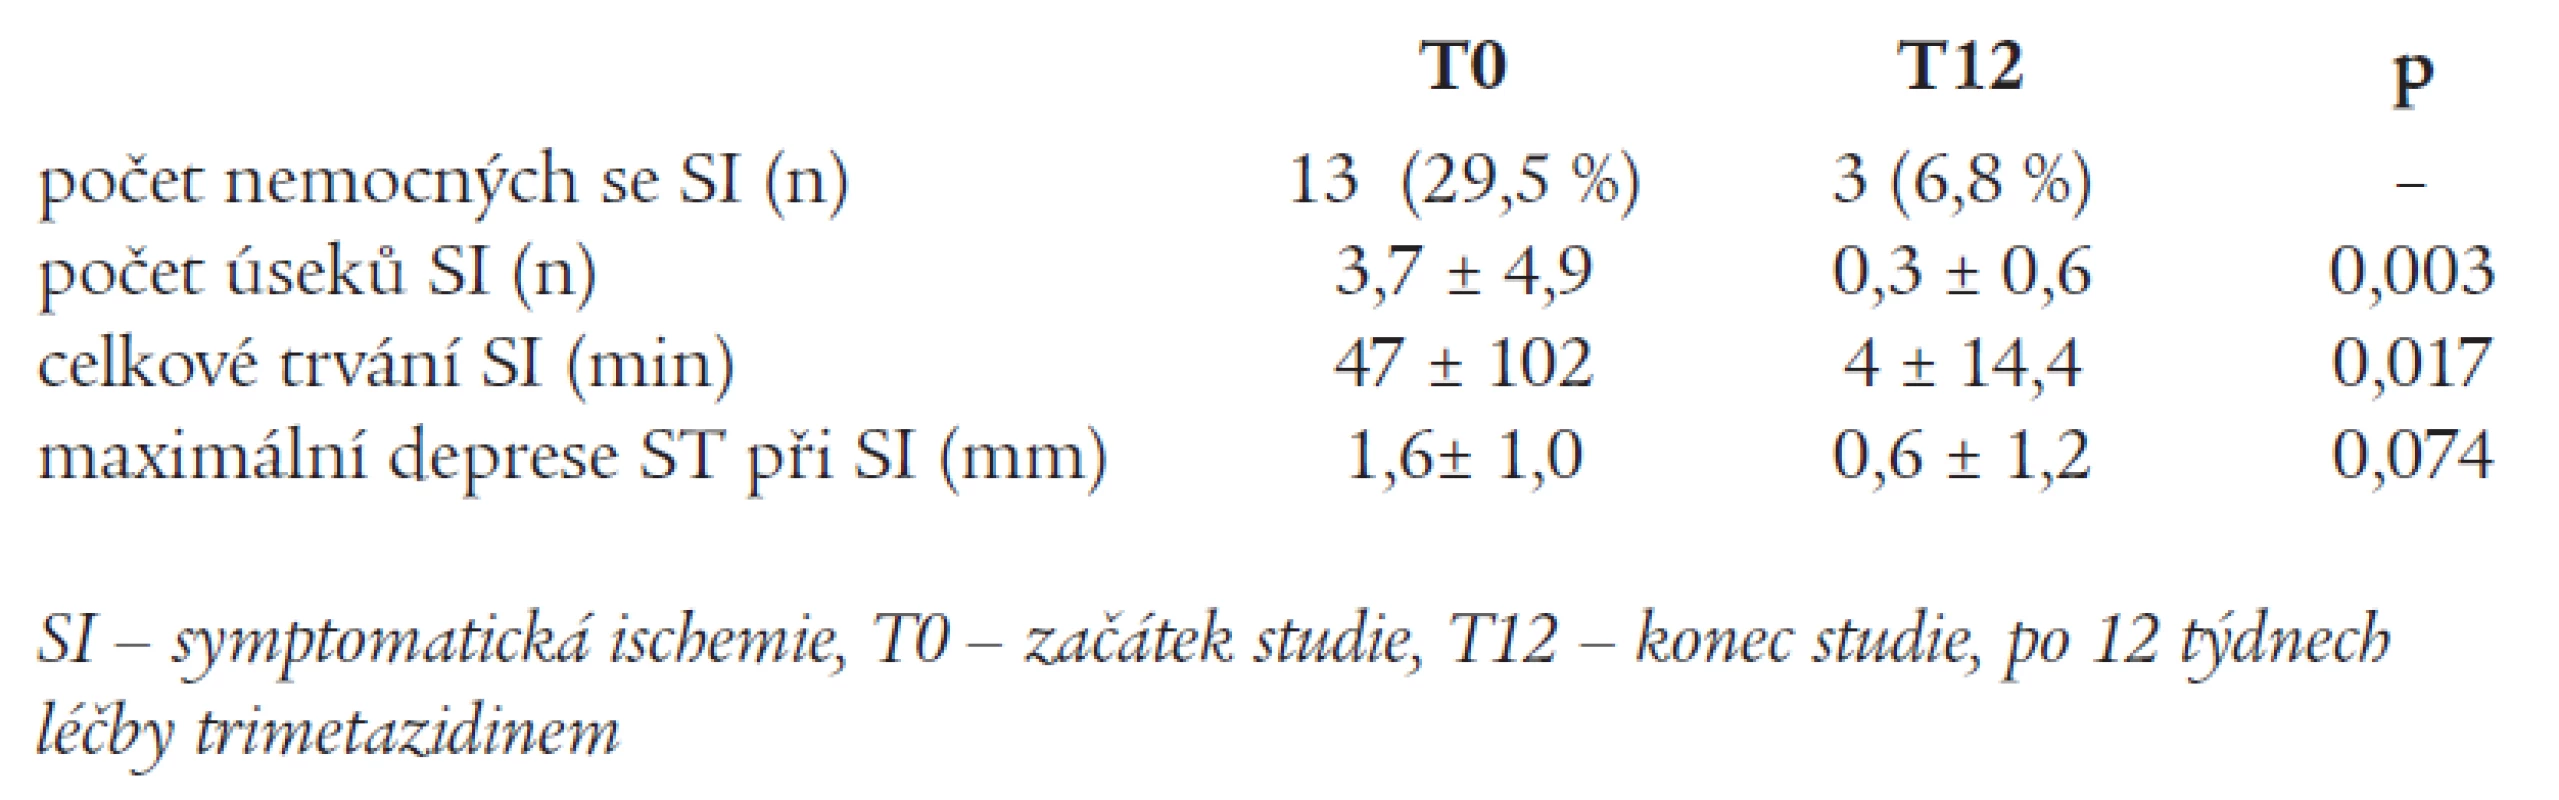 Změny výskytu symptomatické ischemie u podstudie s 24hodinovým monitorováním EKG (n = 44).